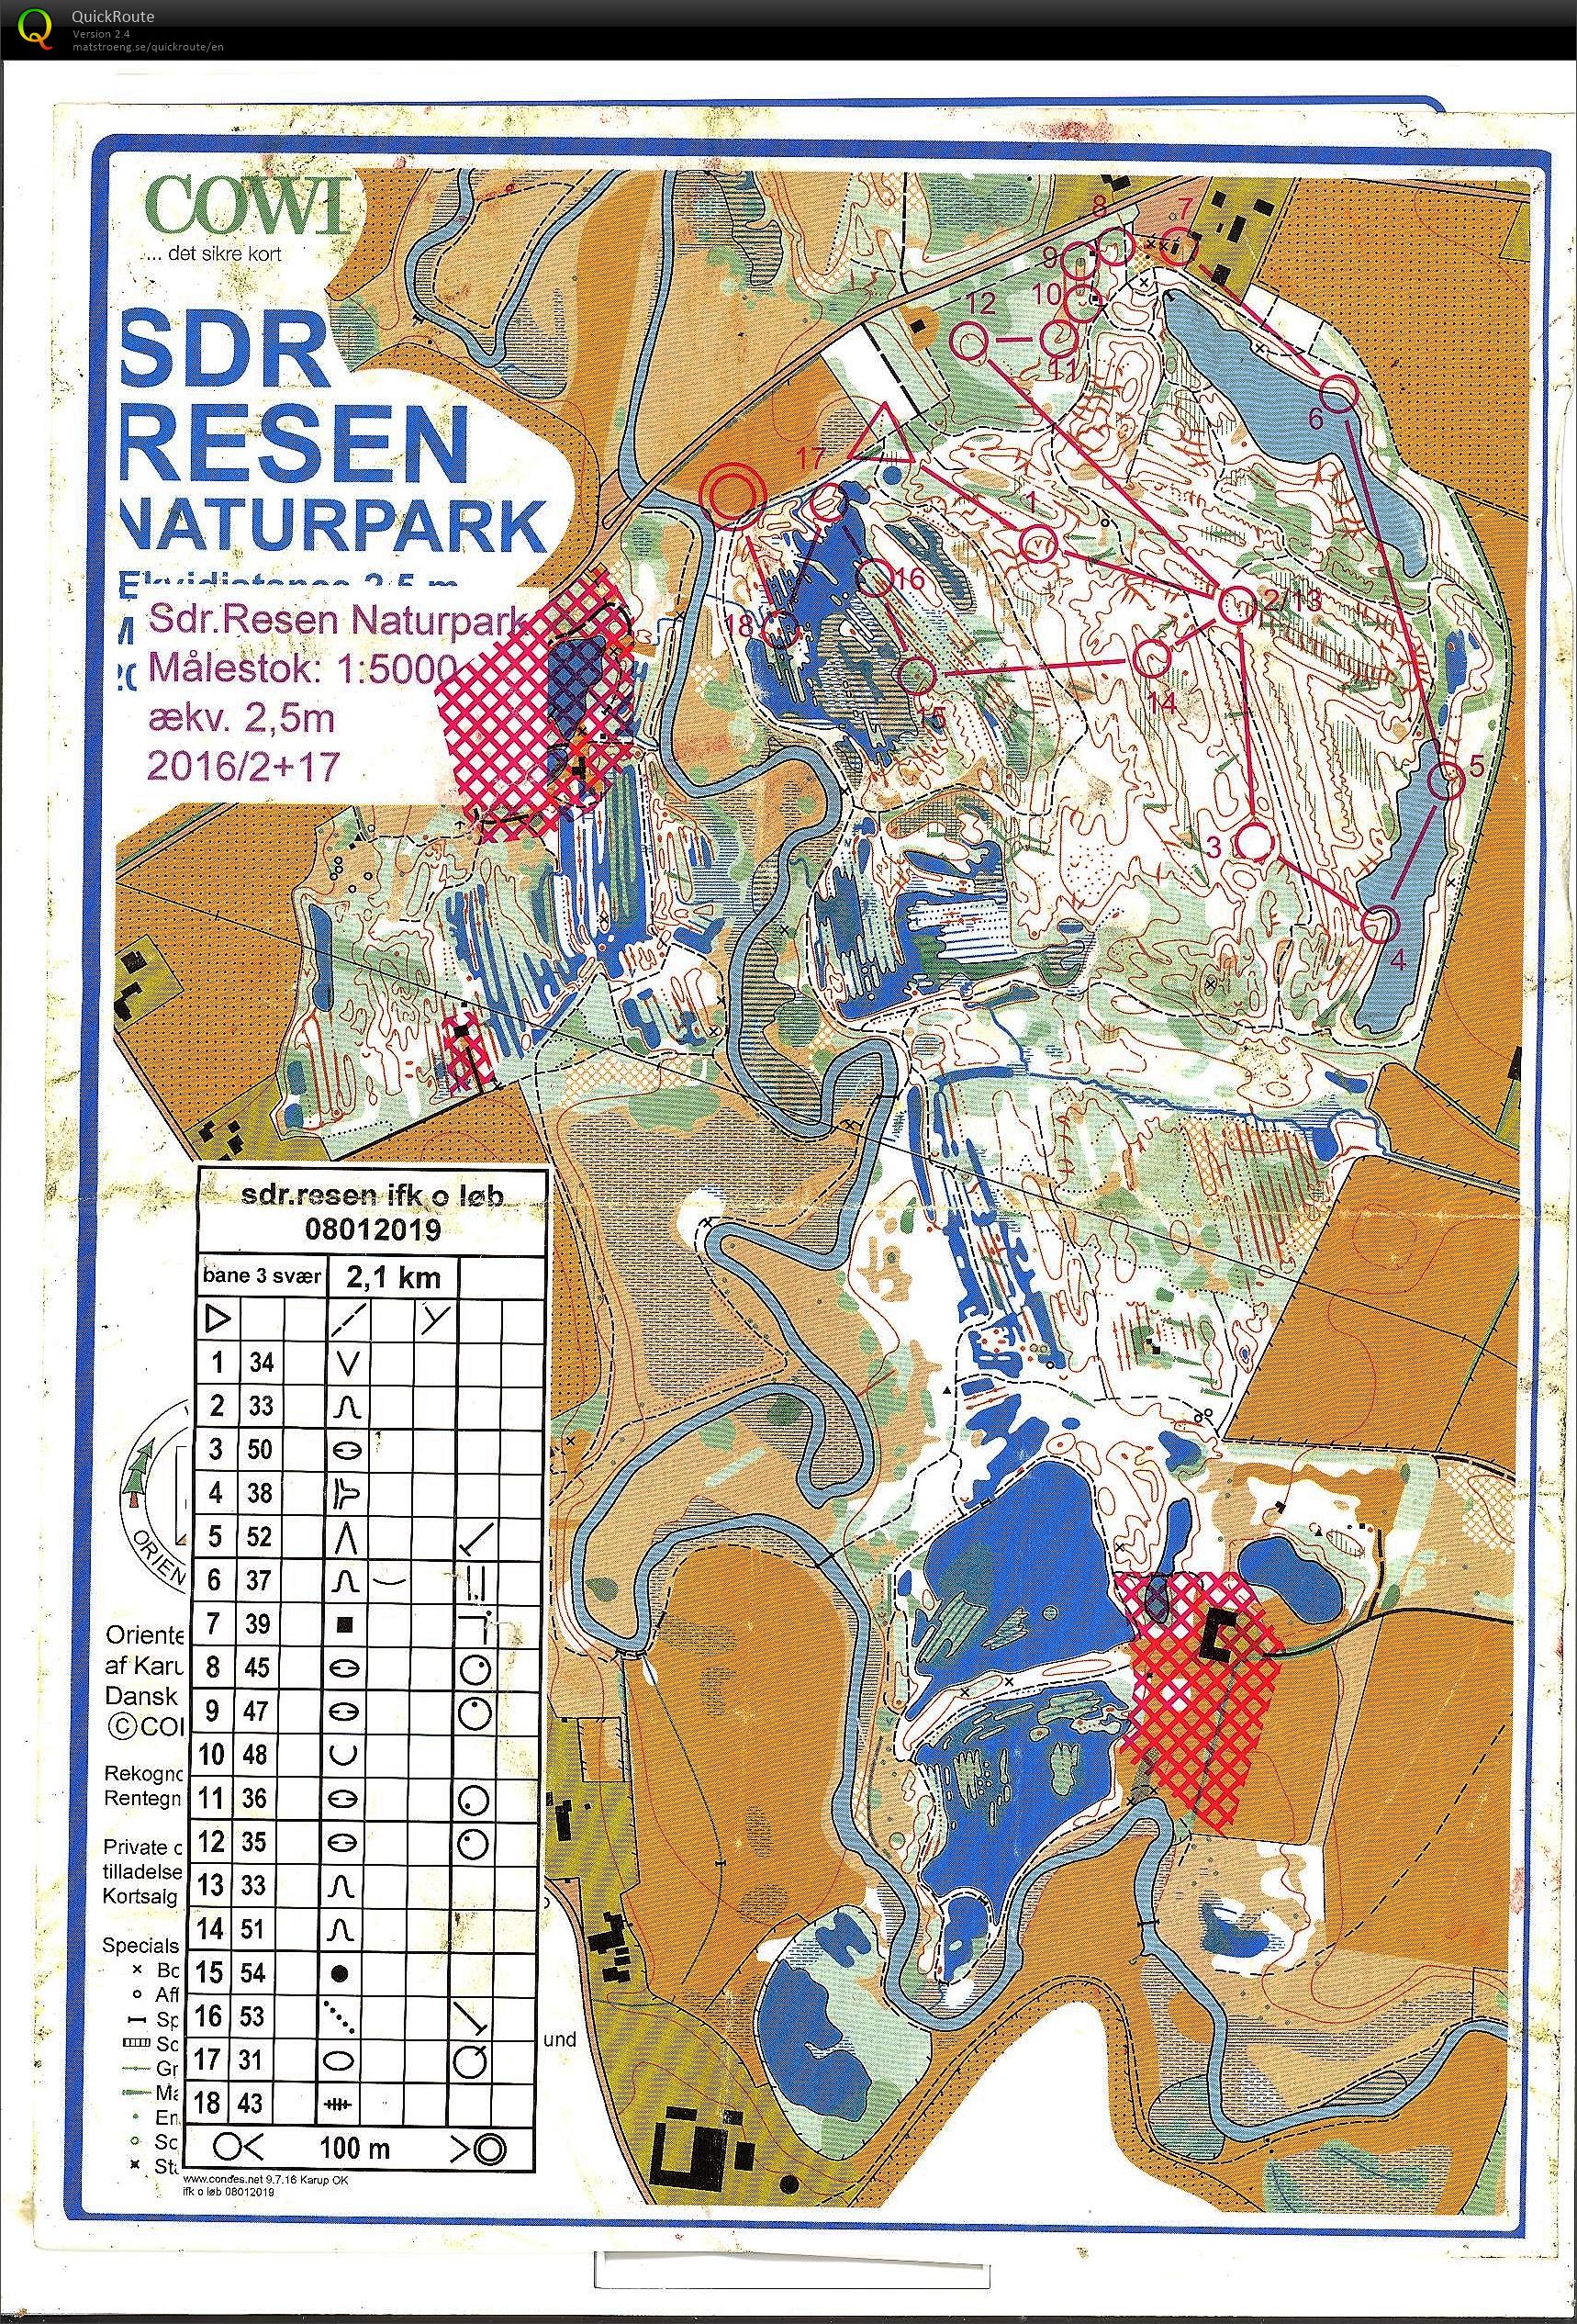 Resen Naturpark (08/01/2019)